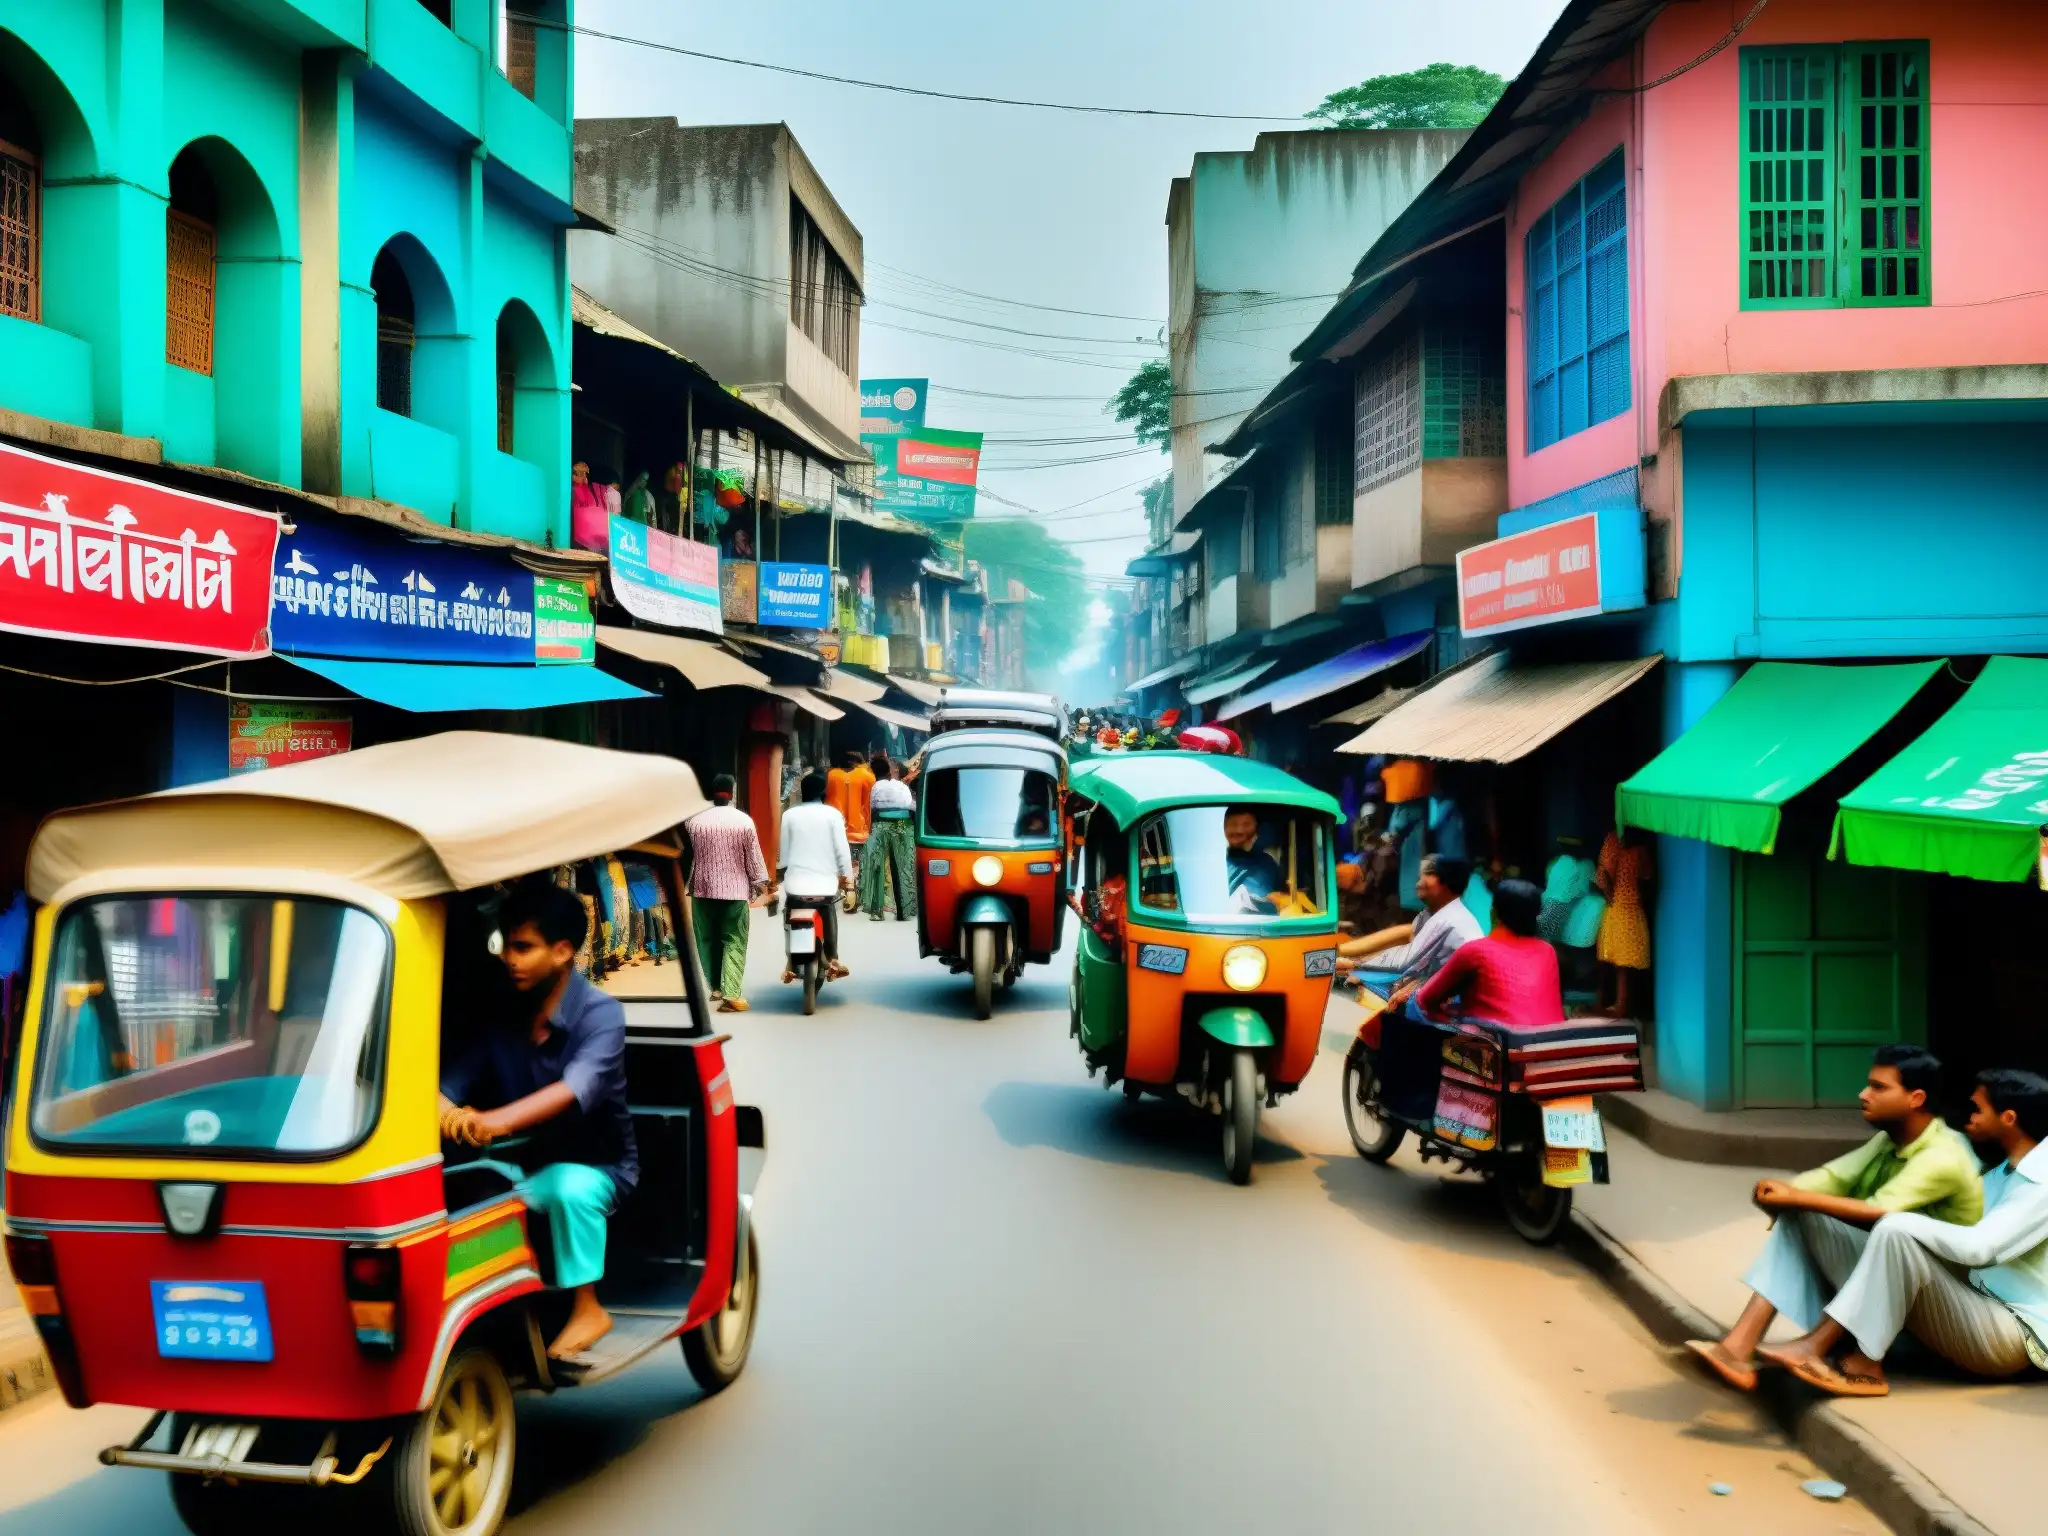 Vibrante calle de Bangladesh, llena de actividad y color